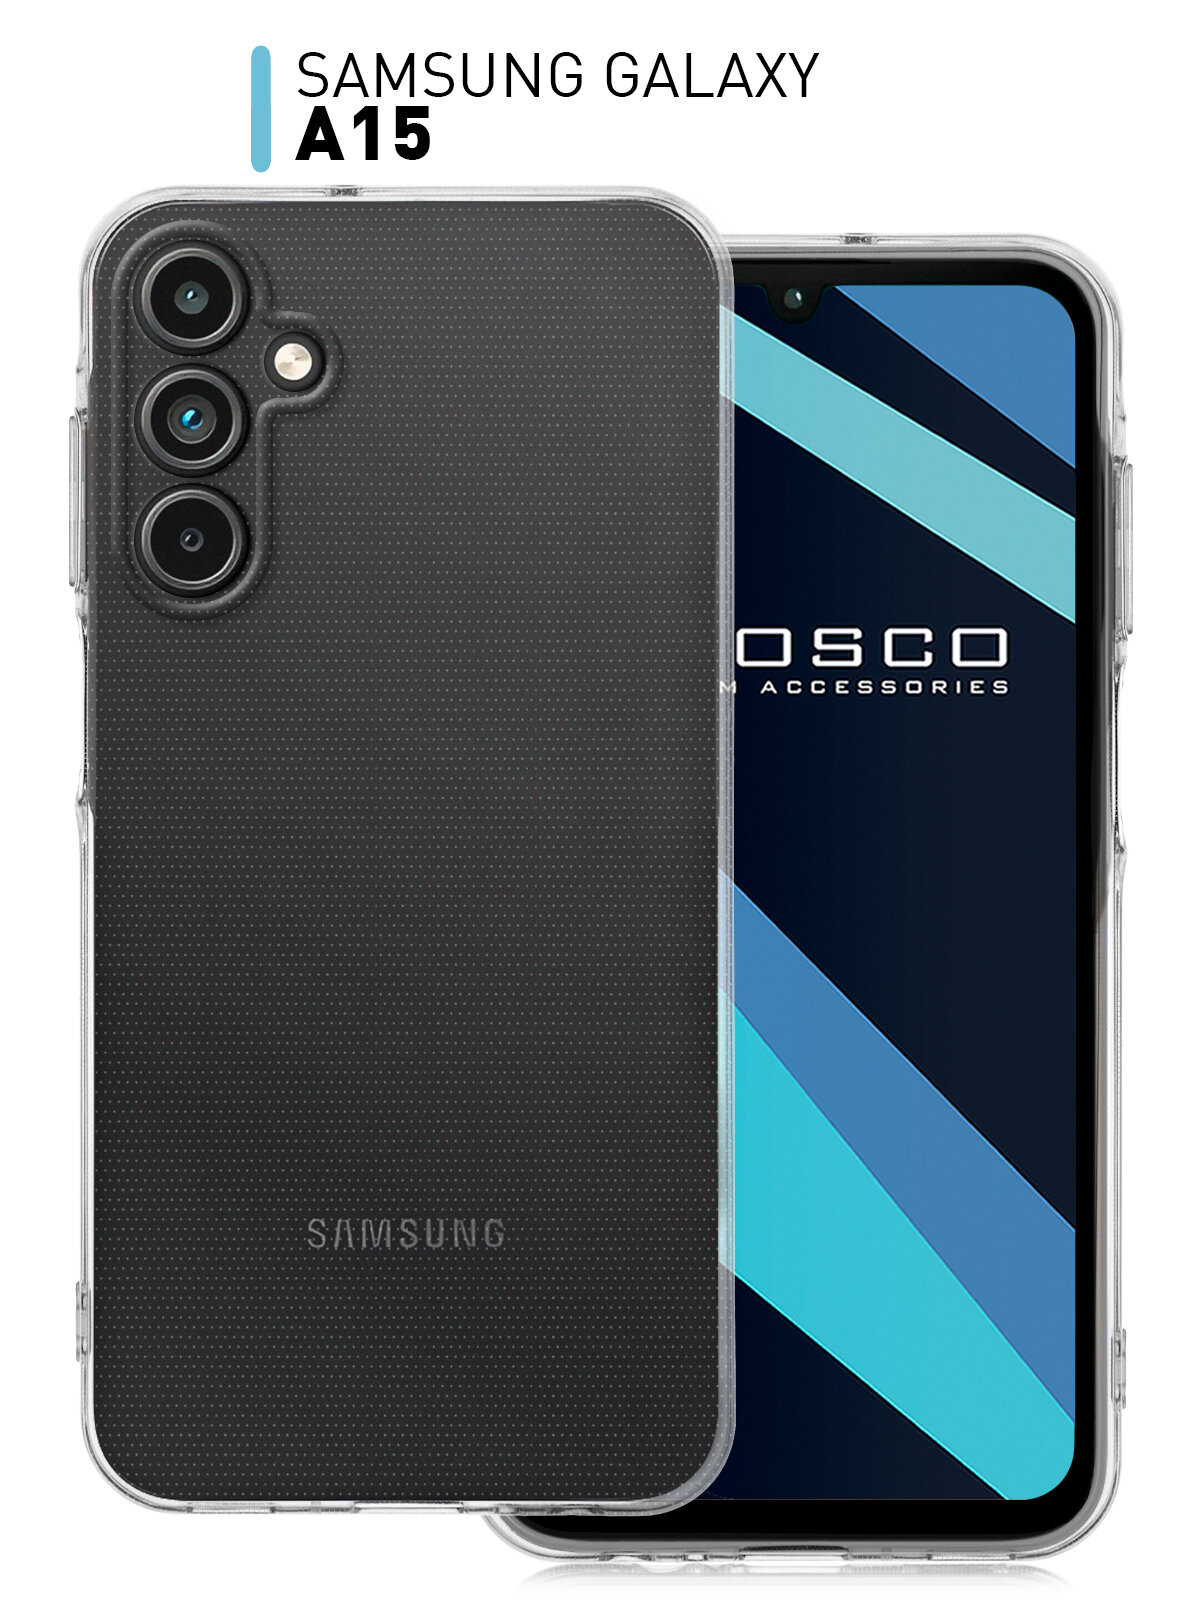 Чехол ROSCO для Samsung Galaxy A15 (Самсунг Галакси А15) с защитой блока камеры, силиконовый чехол, гибкий, прозрачный чехол